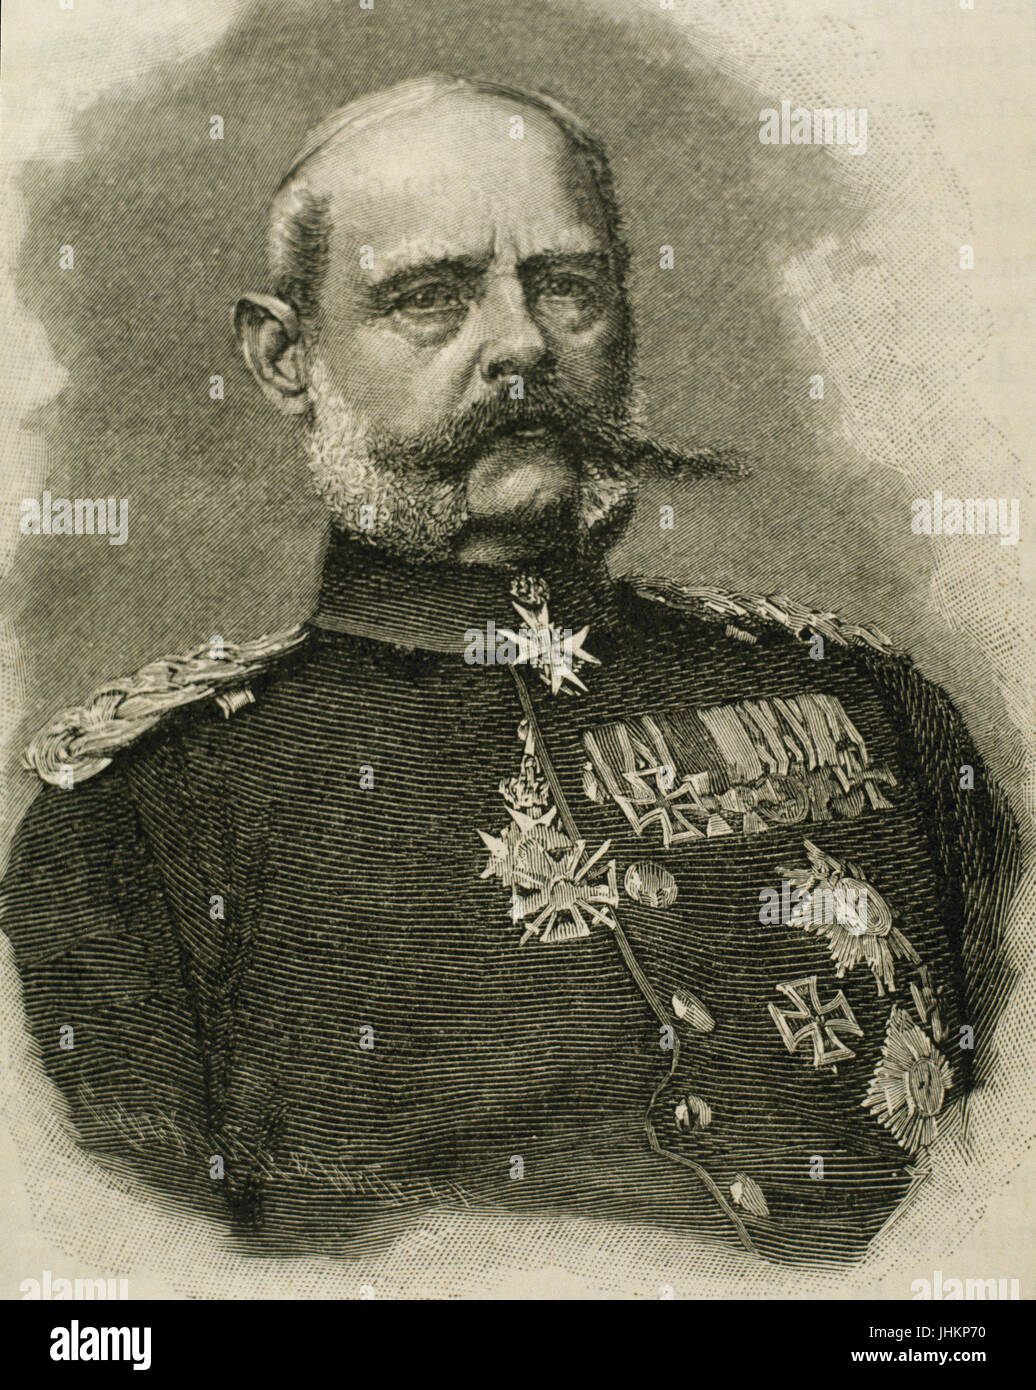 Alexander August Wilhelm von Pape (1813-1895). Royal fanteria prussiana Colonel-General speciale con il rango di Generalfeldmarschall. Ritratto. Incisione, 1885. Foto Stock